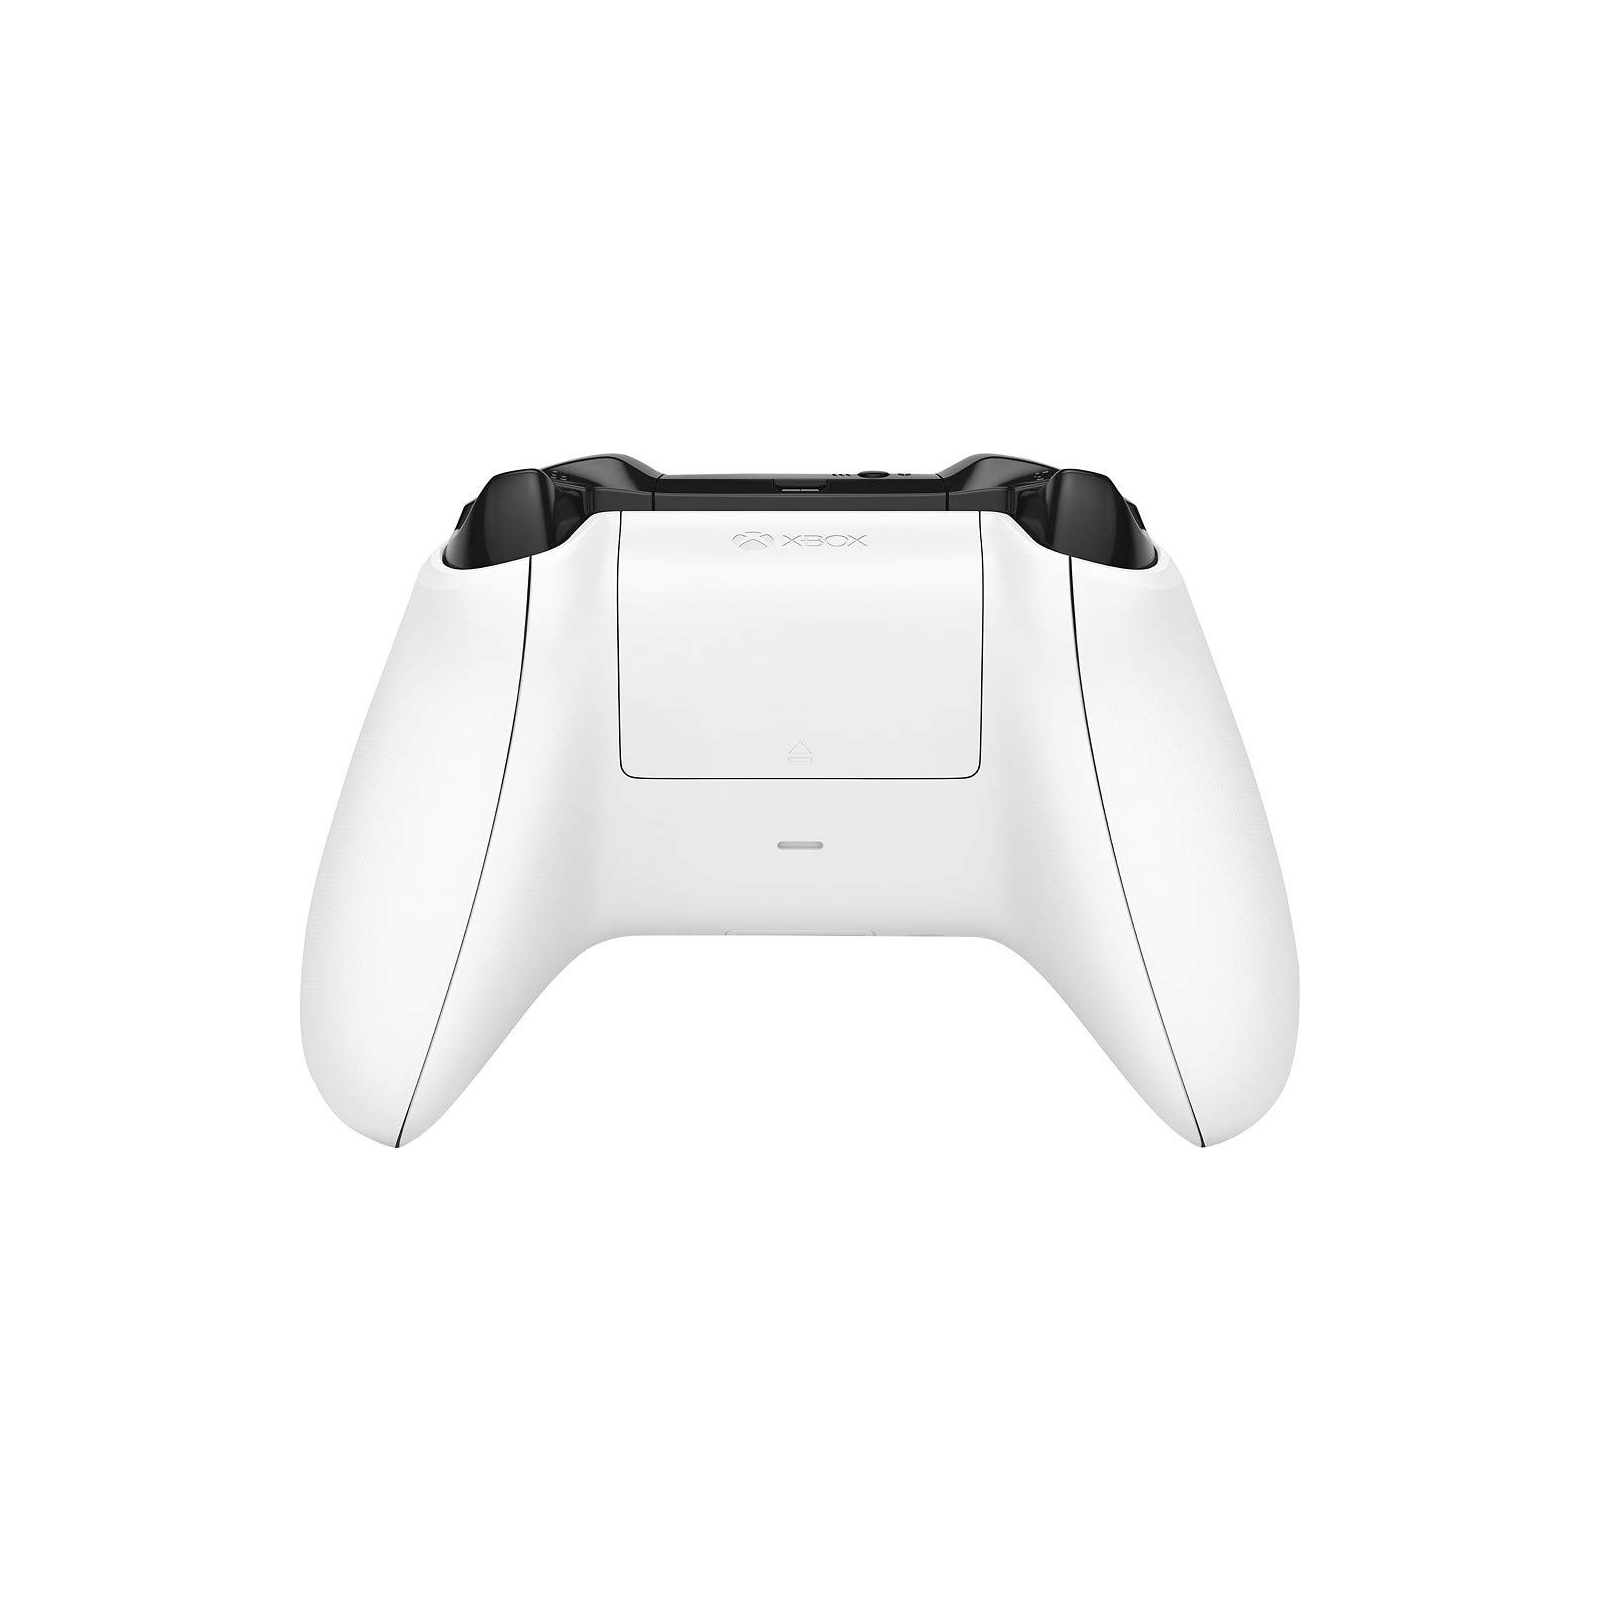 Игровая консоль Microsoft Xbox One X 1TB White изображение 3